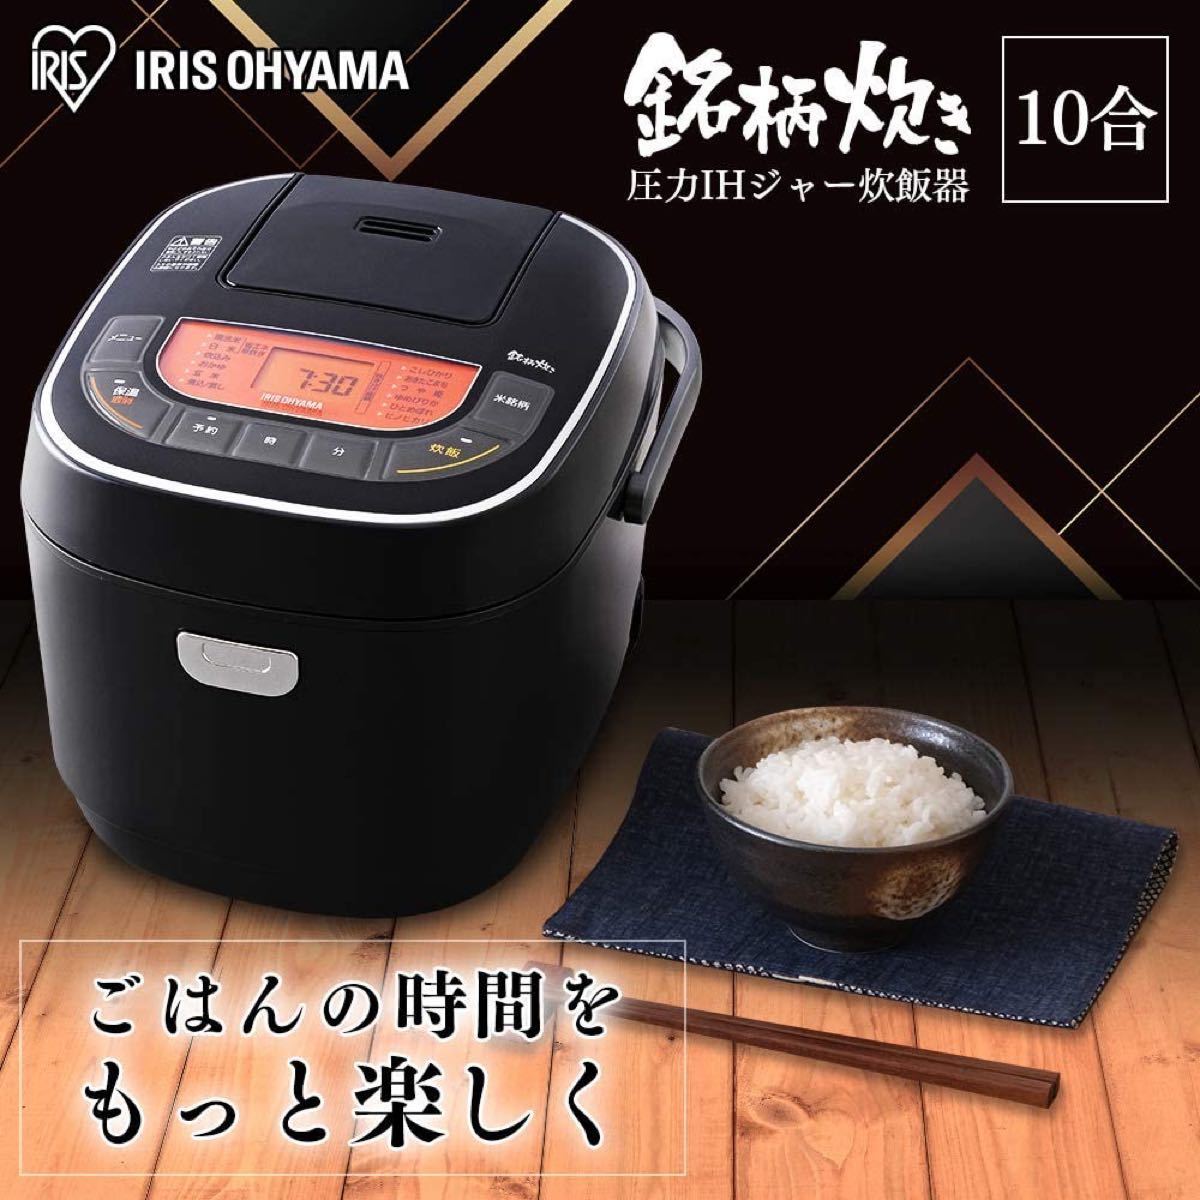 アイリスオーヤマ 炊飯器 一升 10合 マイコン式 31銘柄炊き分け機能 極厚火釜 玄米 ブラック RC-MC10-B